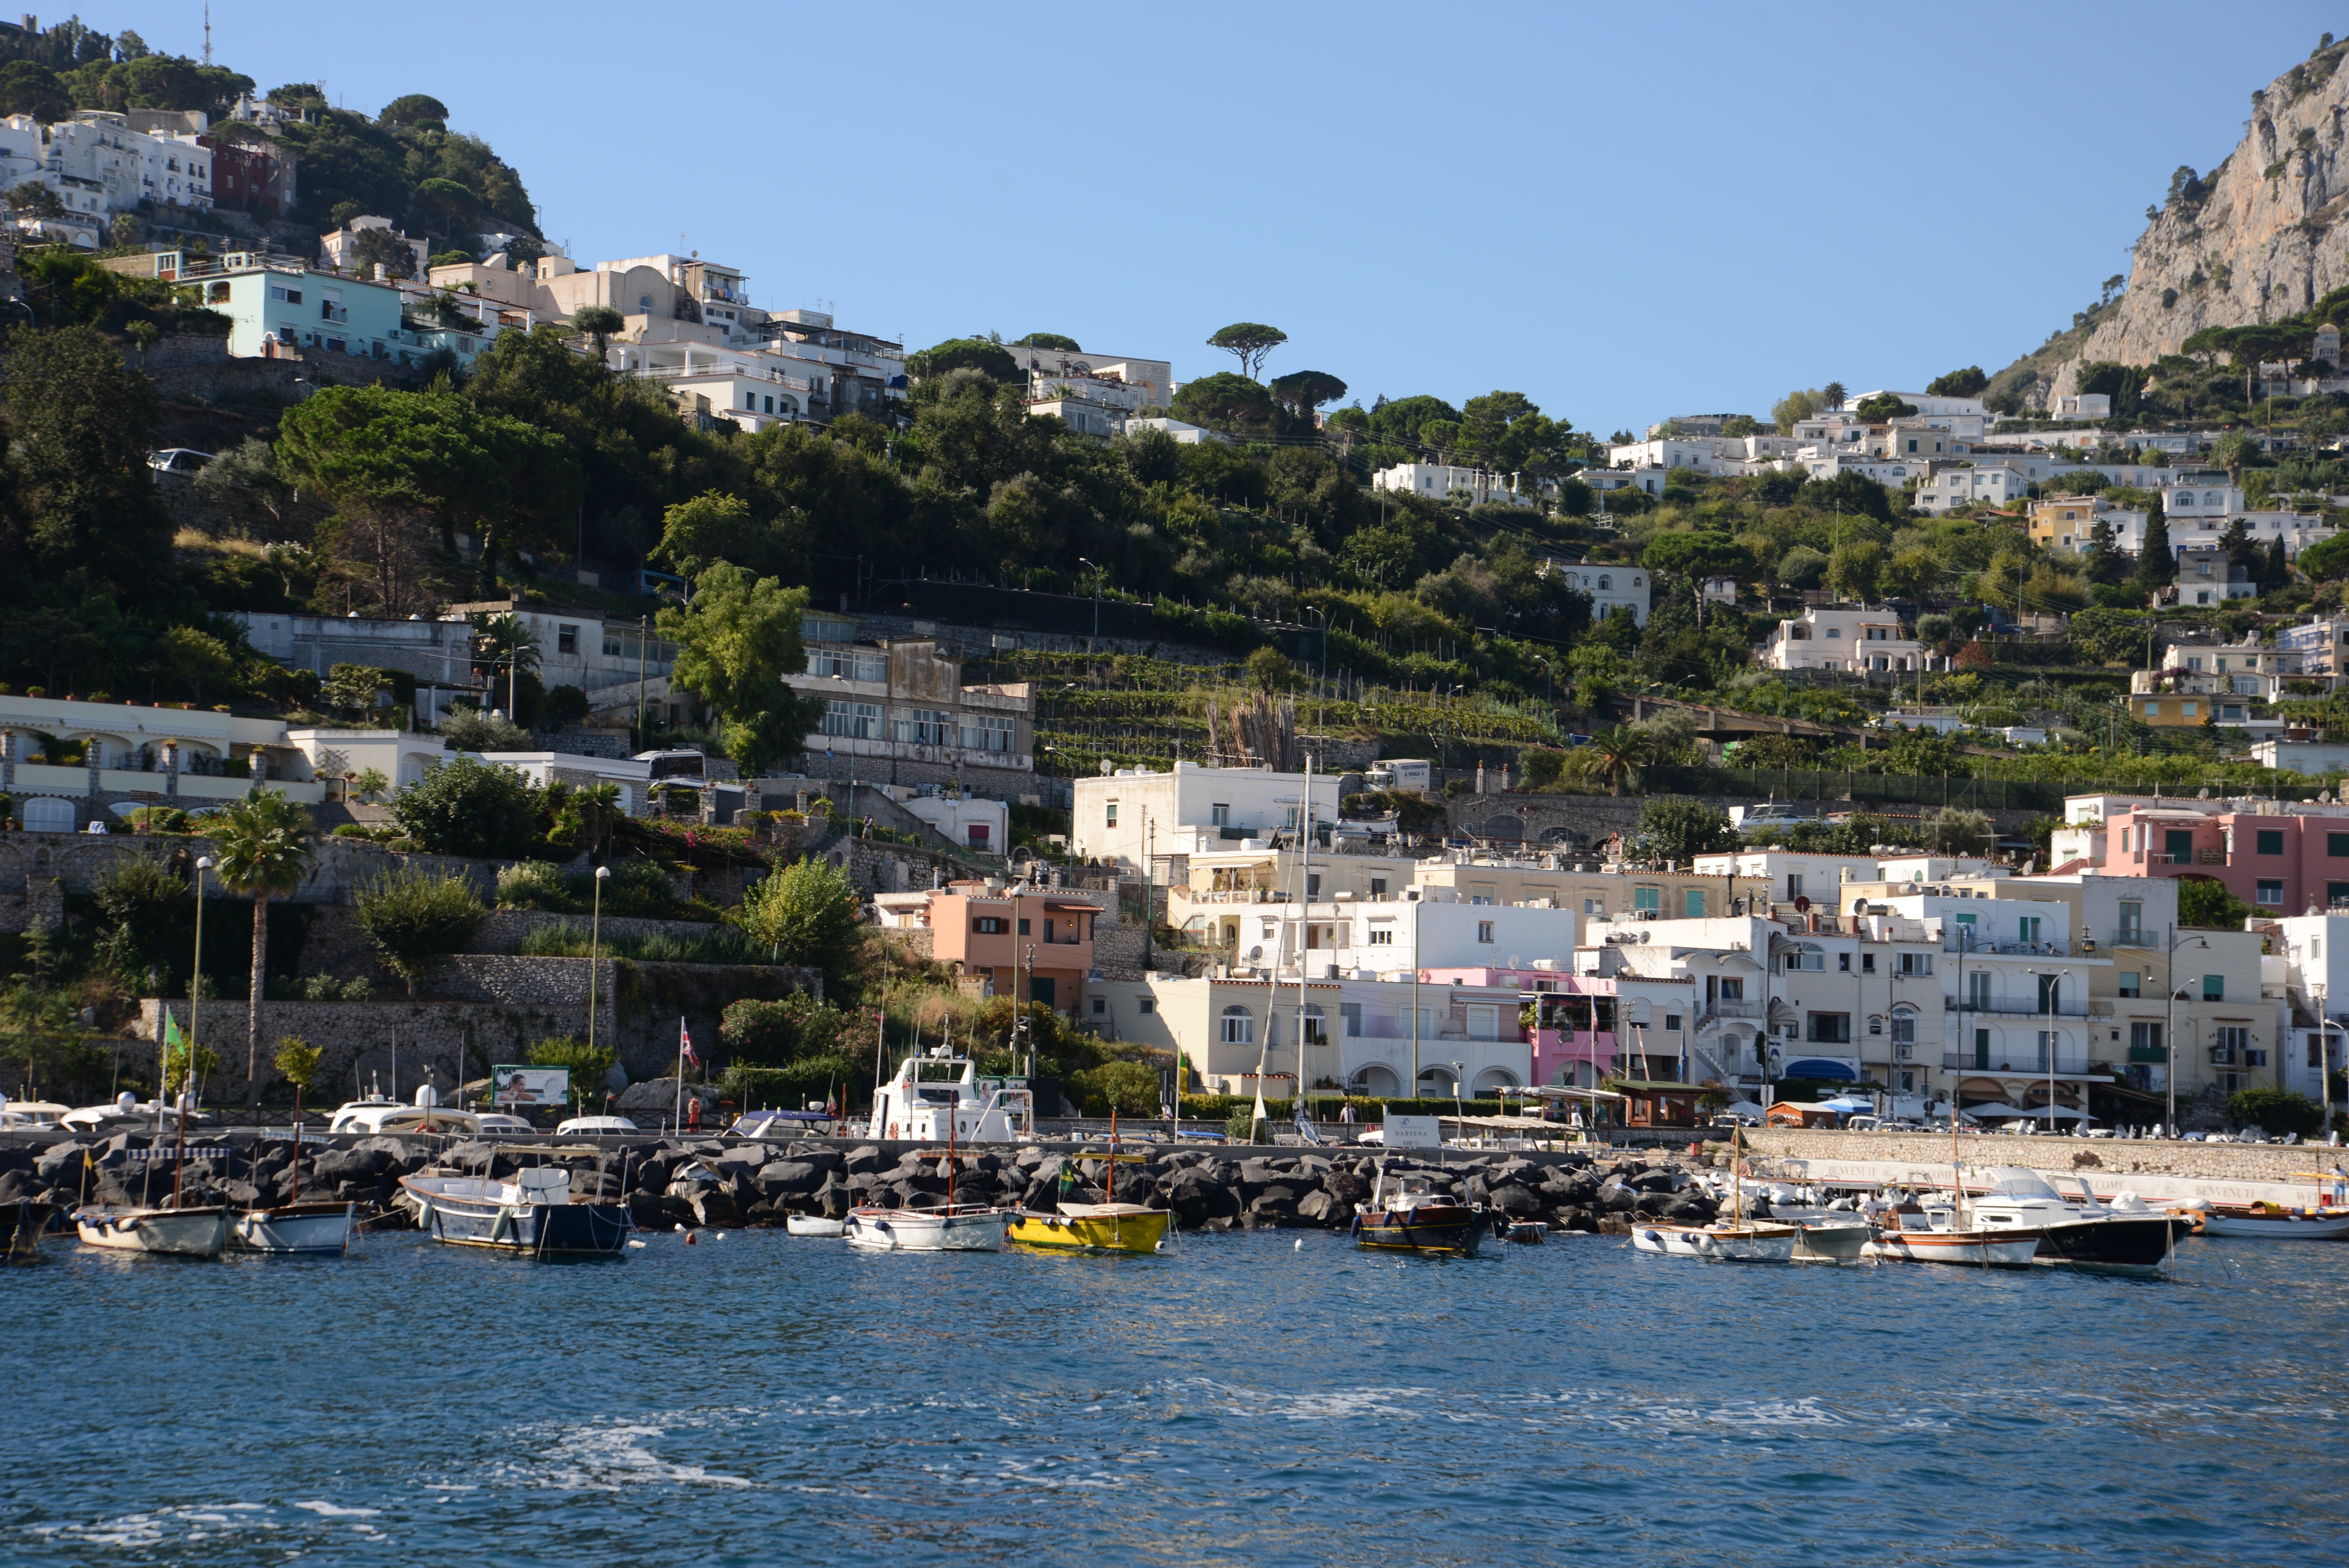 Der Hafen von Capri.